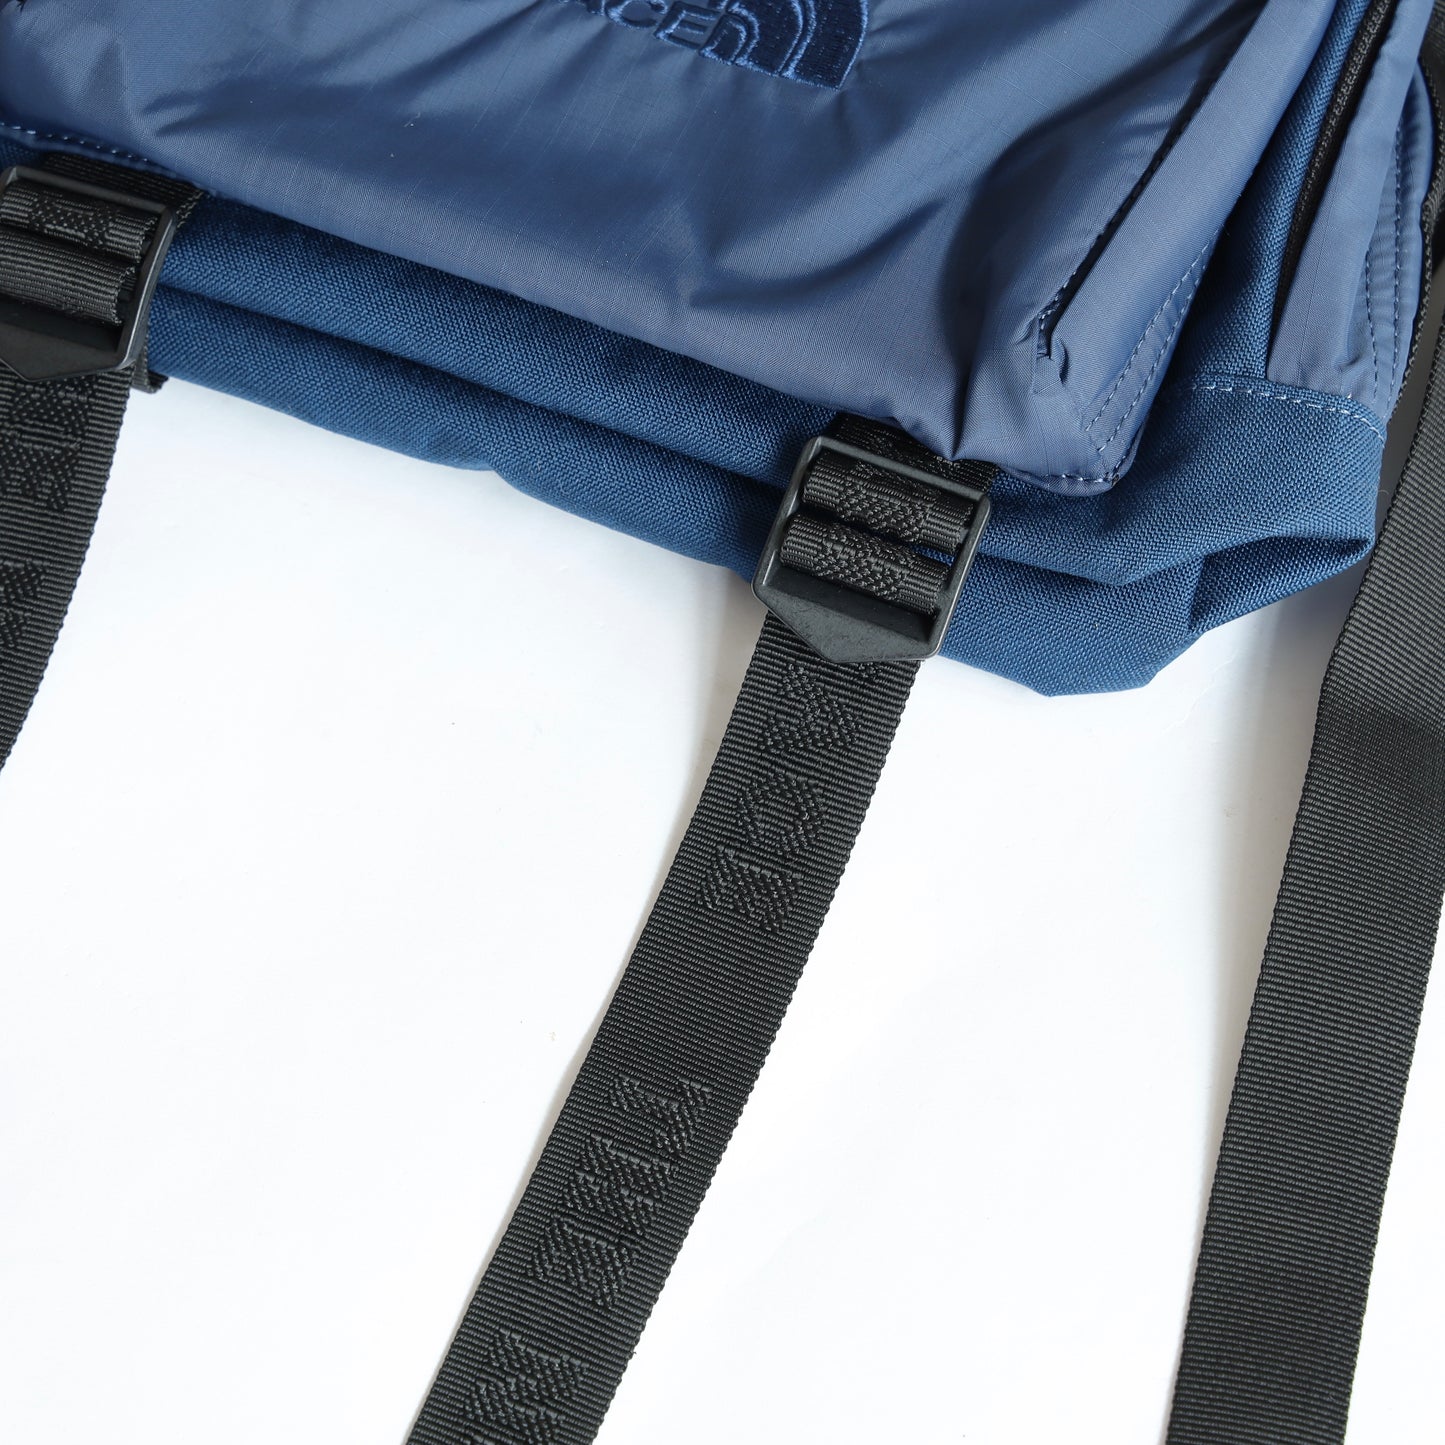 CORDURA Nylon Shoulder Bag - VINTAGE NAVY